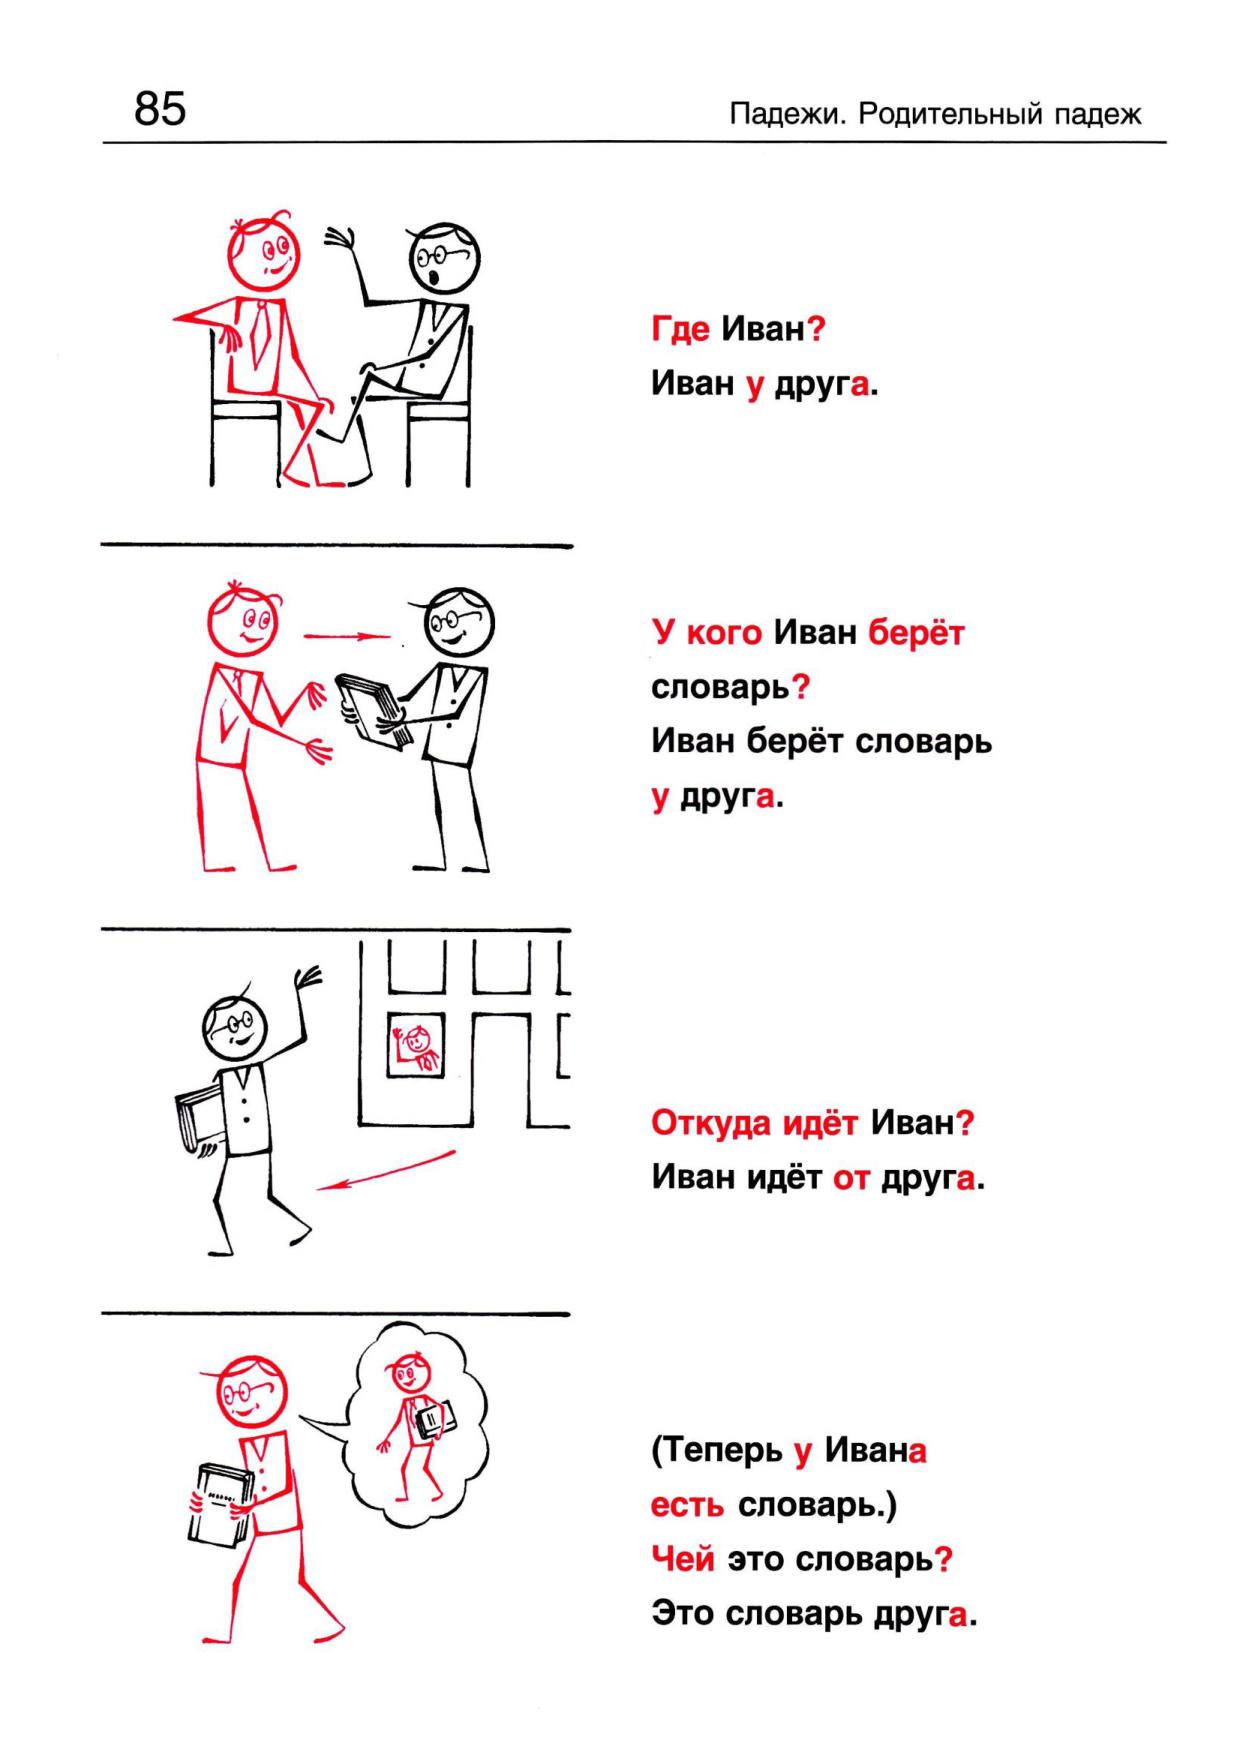 Учить русский язык начинающих